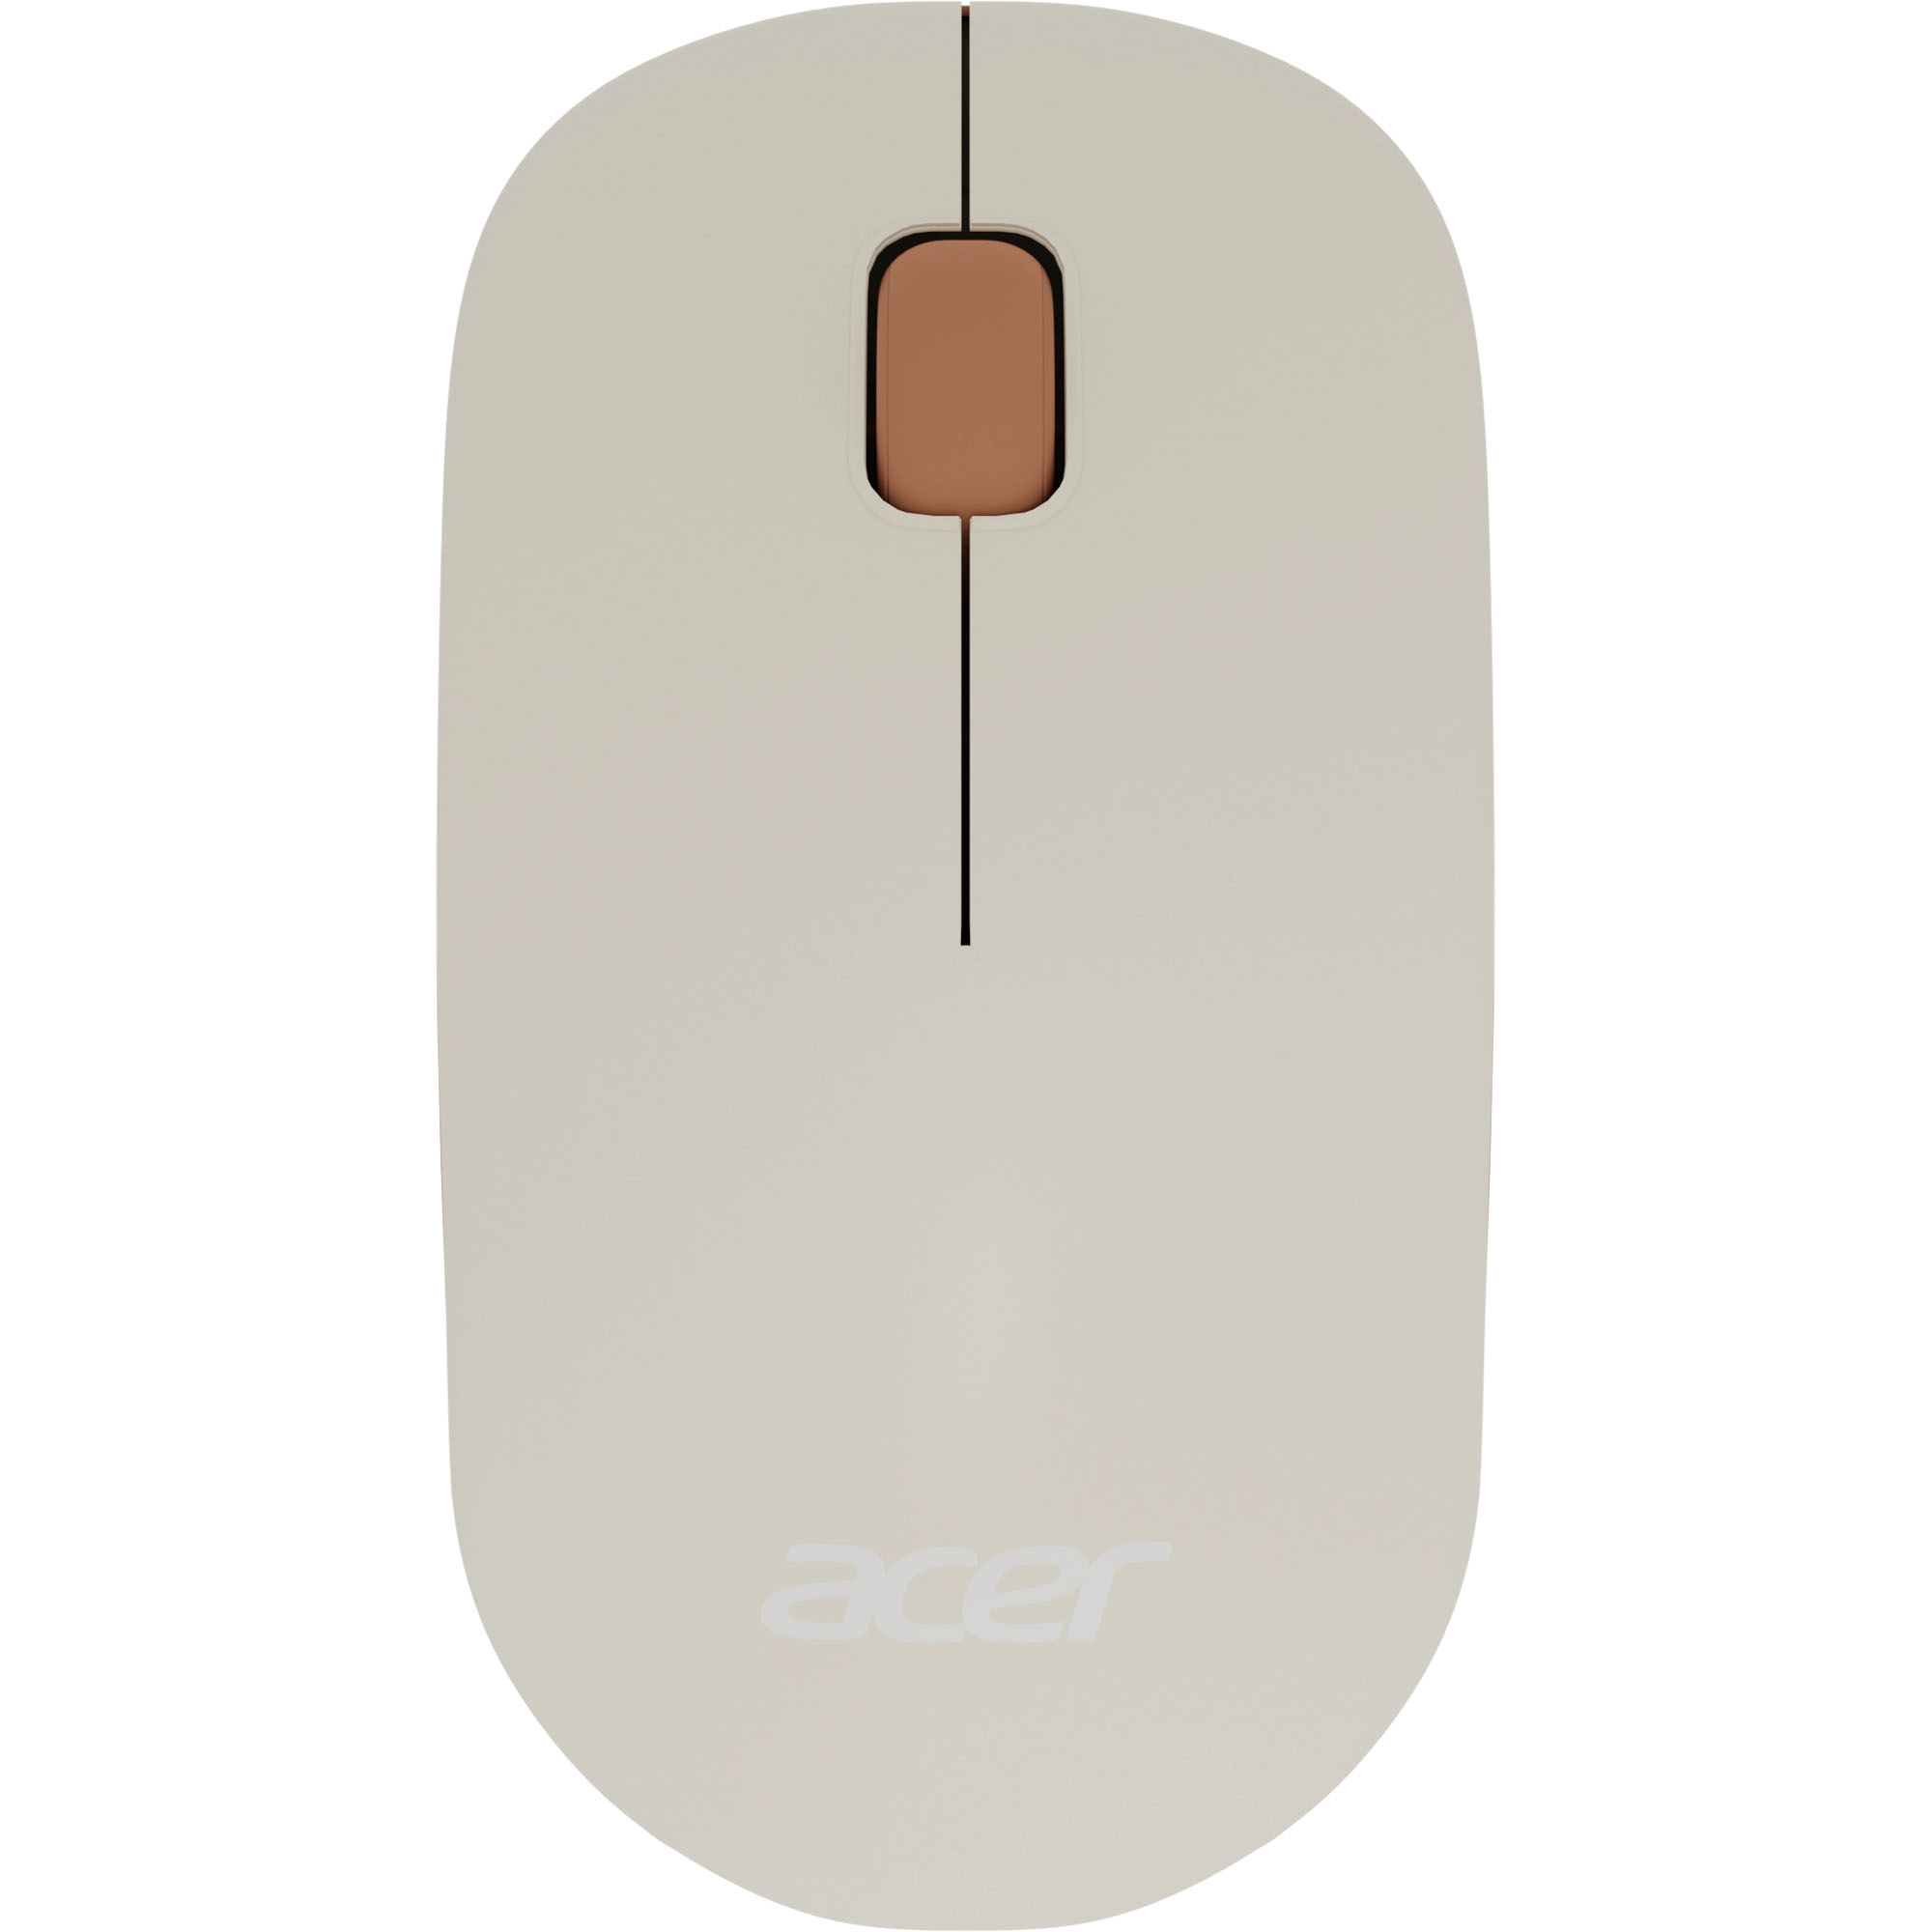 Компьютерная мышь Acer OMR200 бежевый, коричневый цена и фото